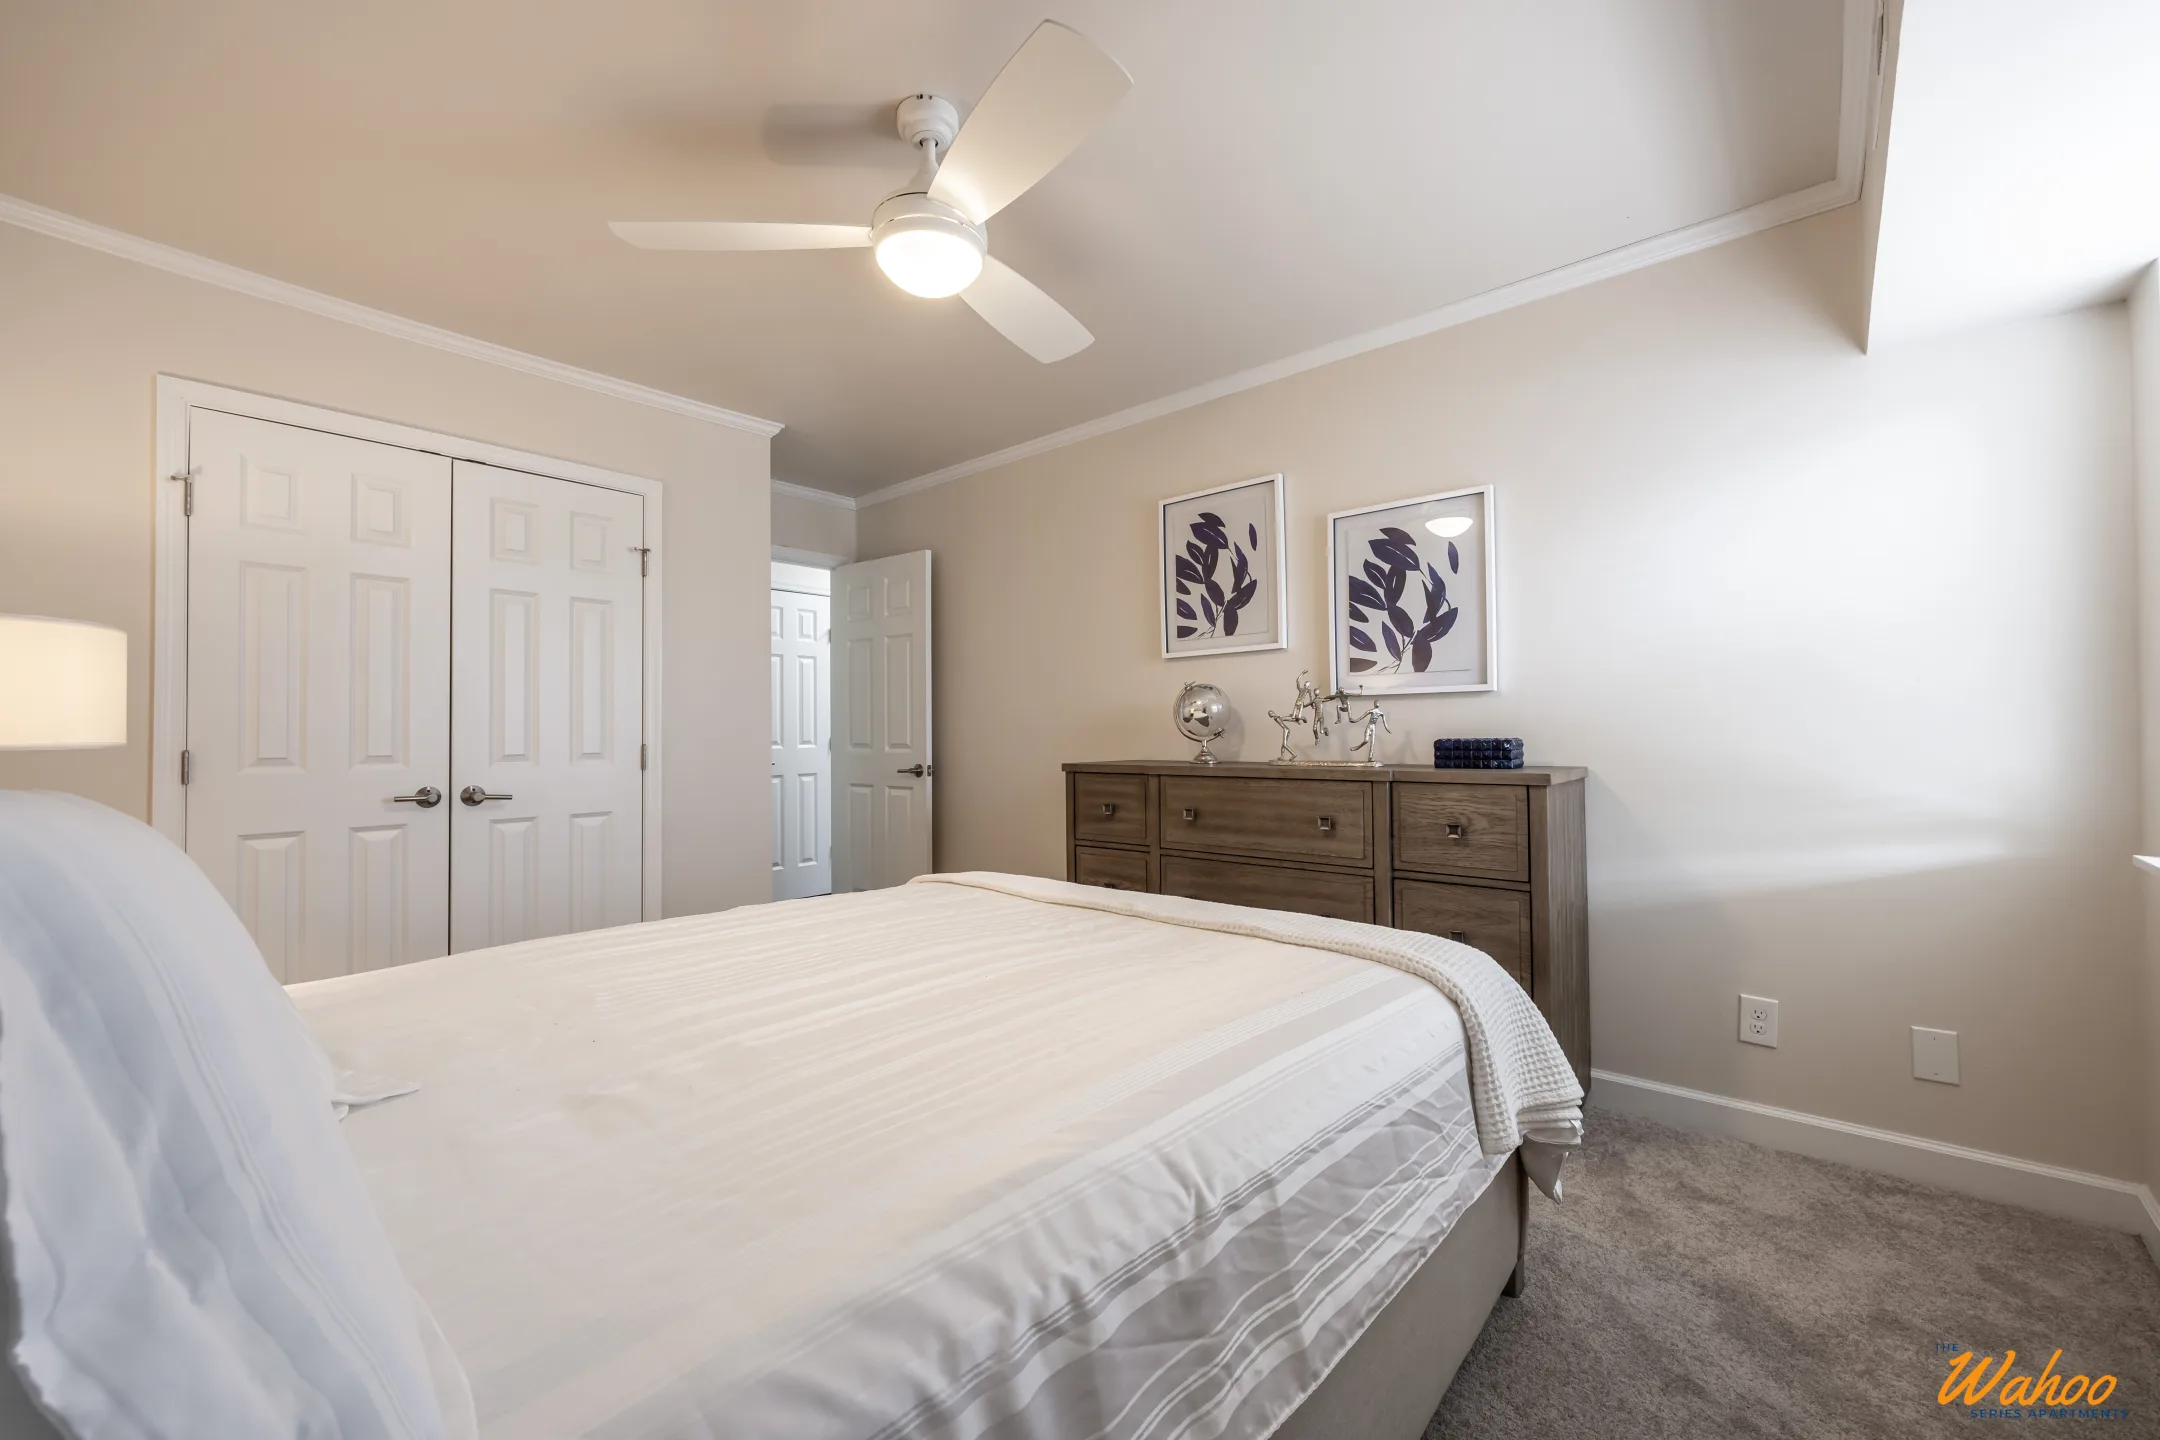 Bedroom - University Heights Apartments - Charlottesville, VA